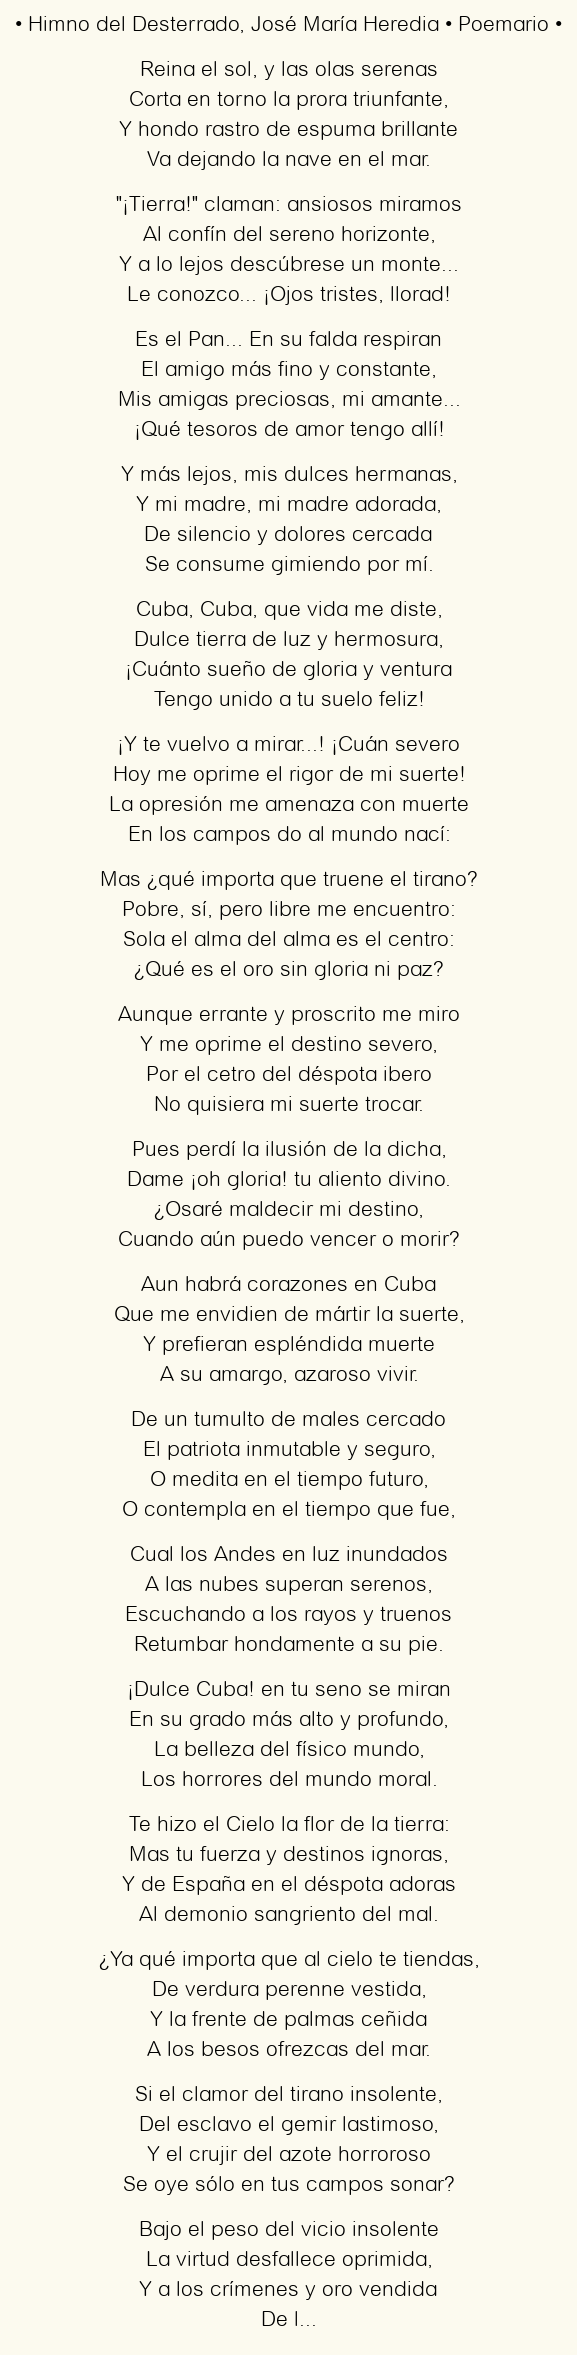 Himno del Desterrado, por José María Heredia